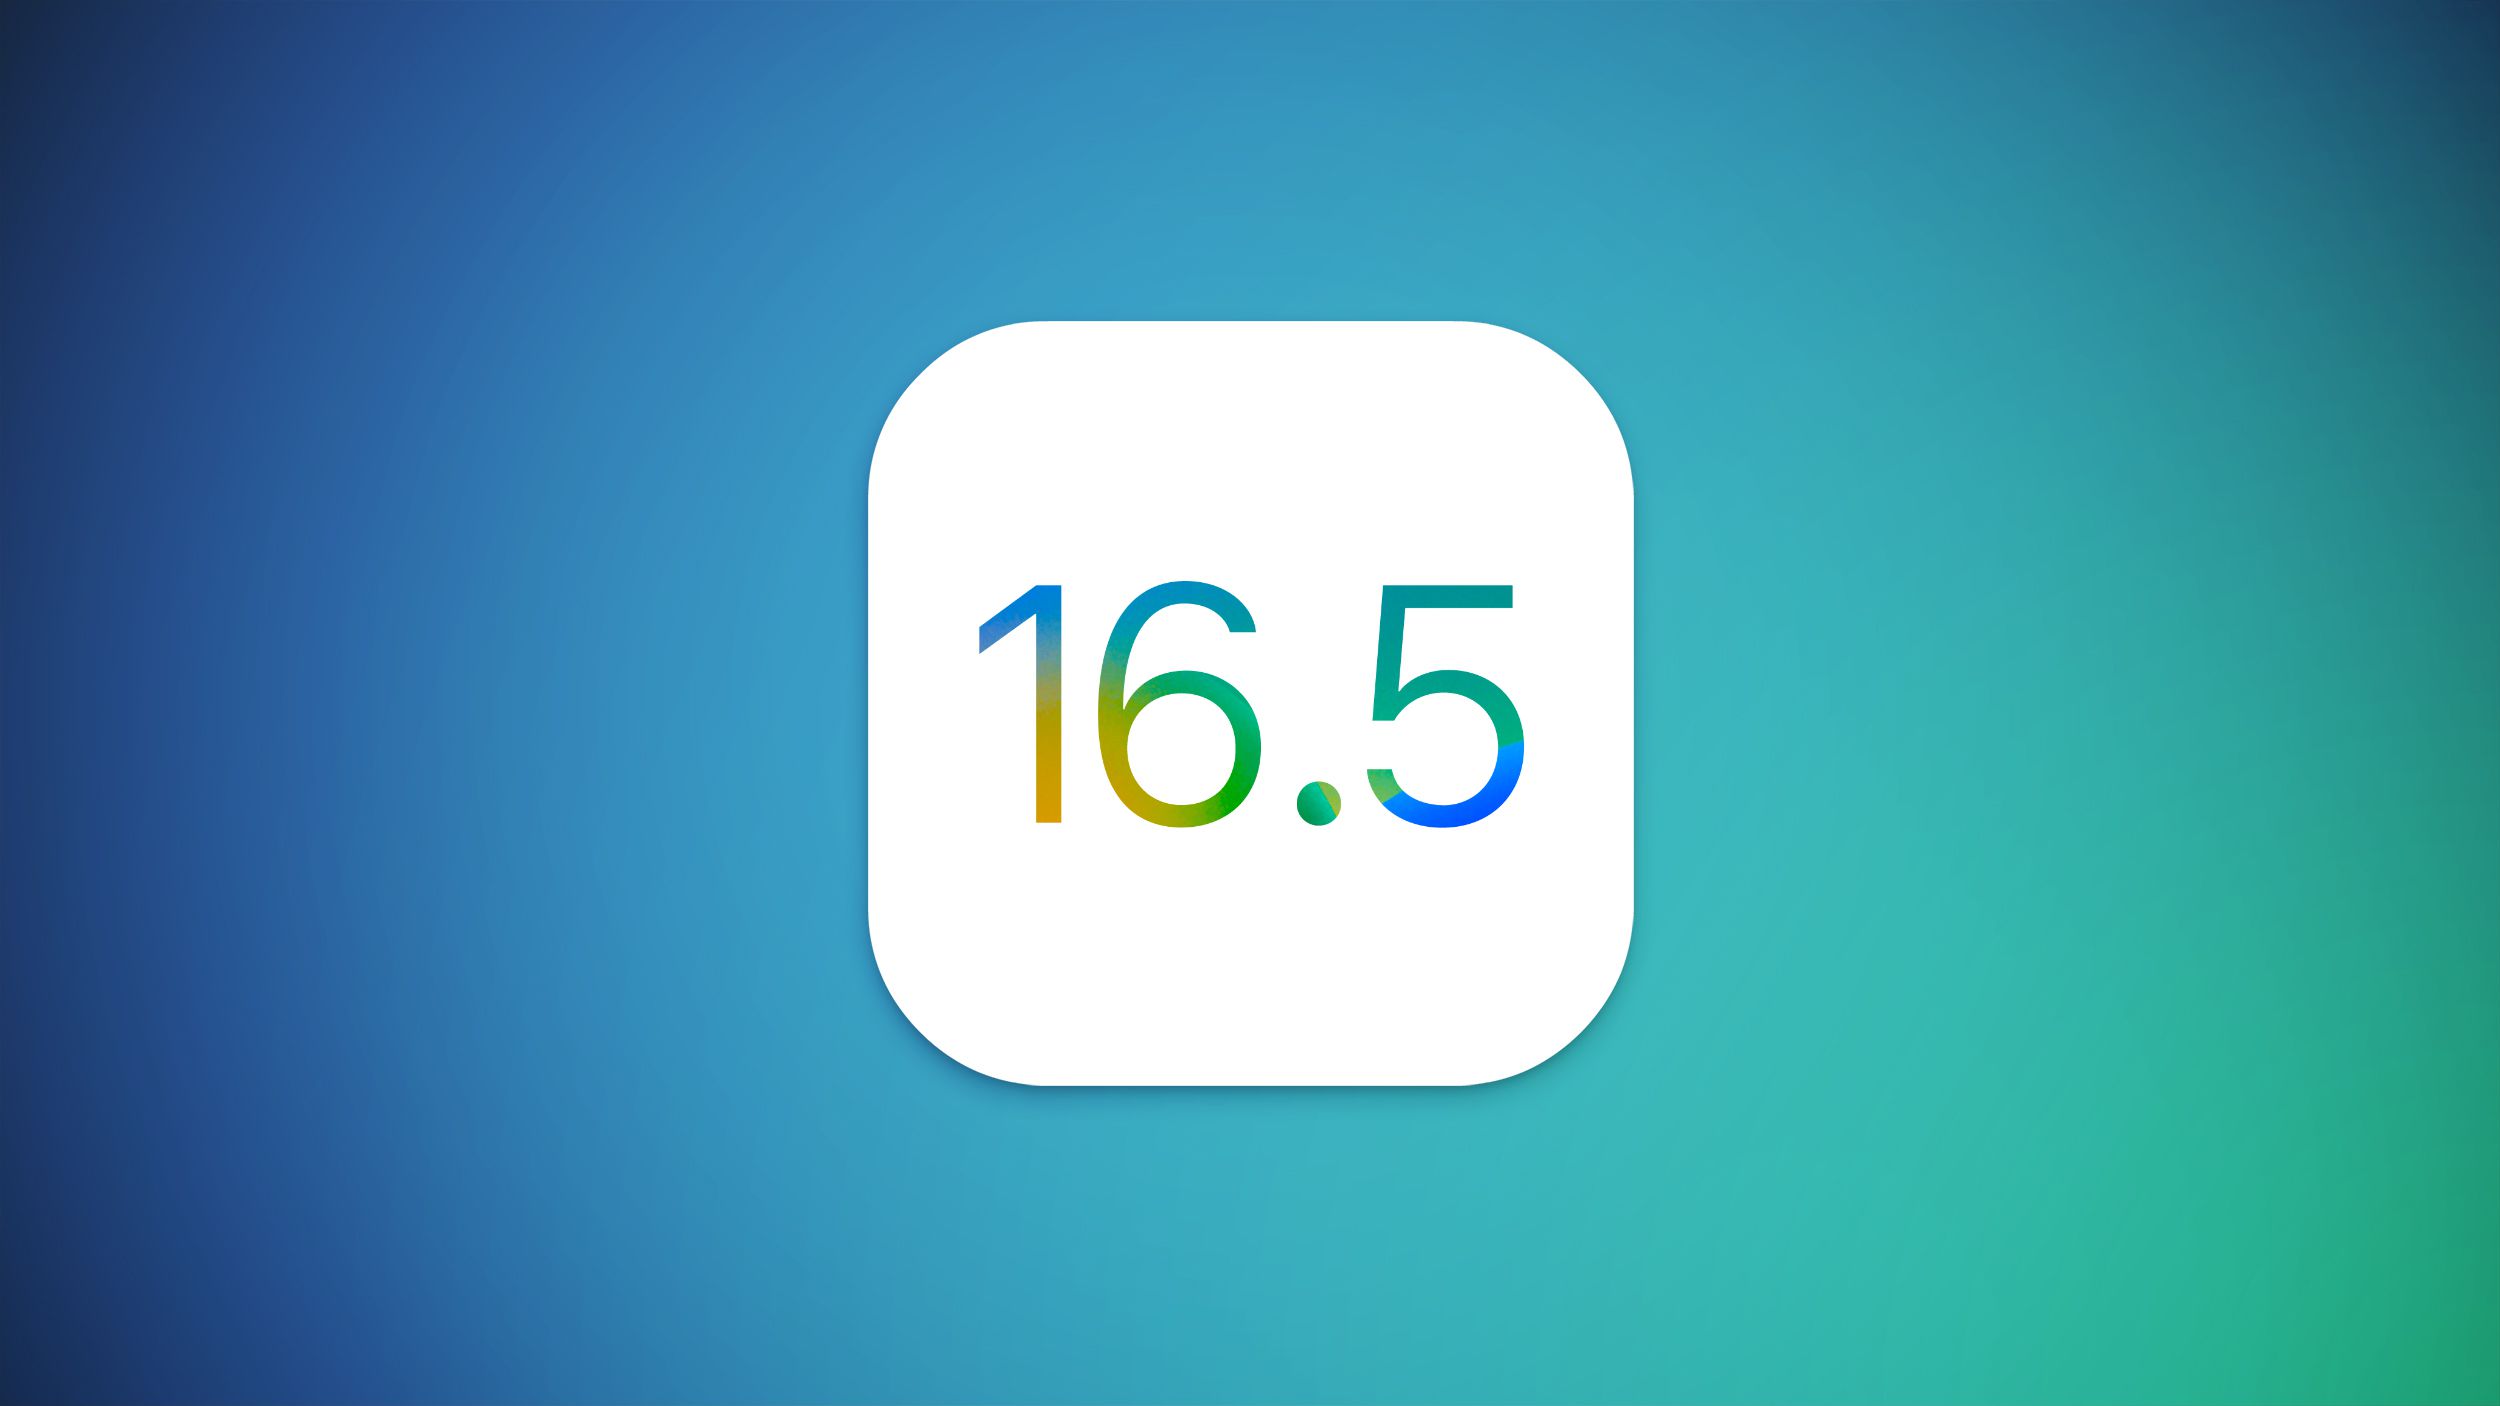 Apple conferma il rilascio di iOS 16.5 la prossima settimana con queste nuove funzionalità